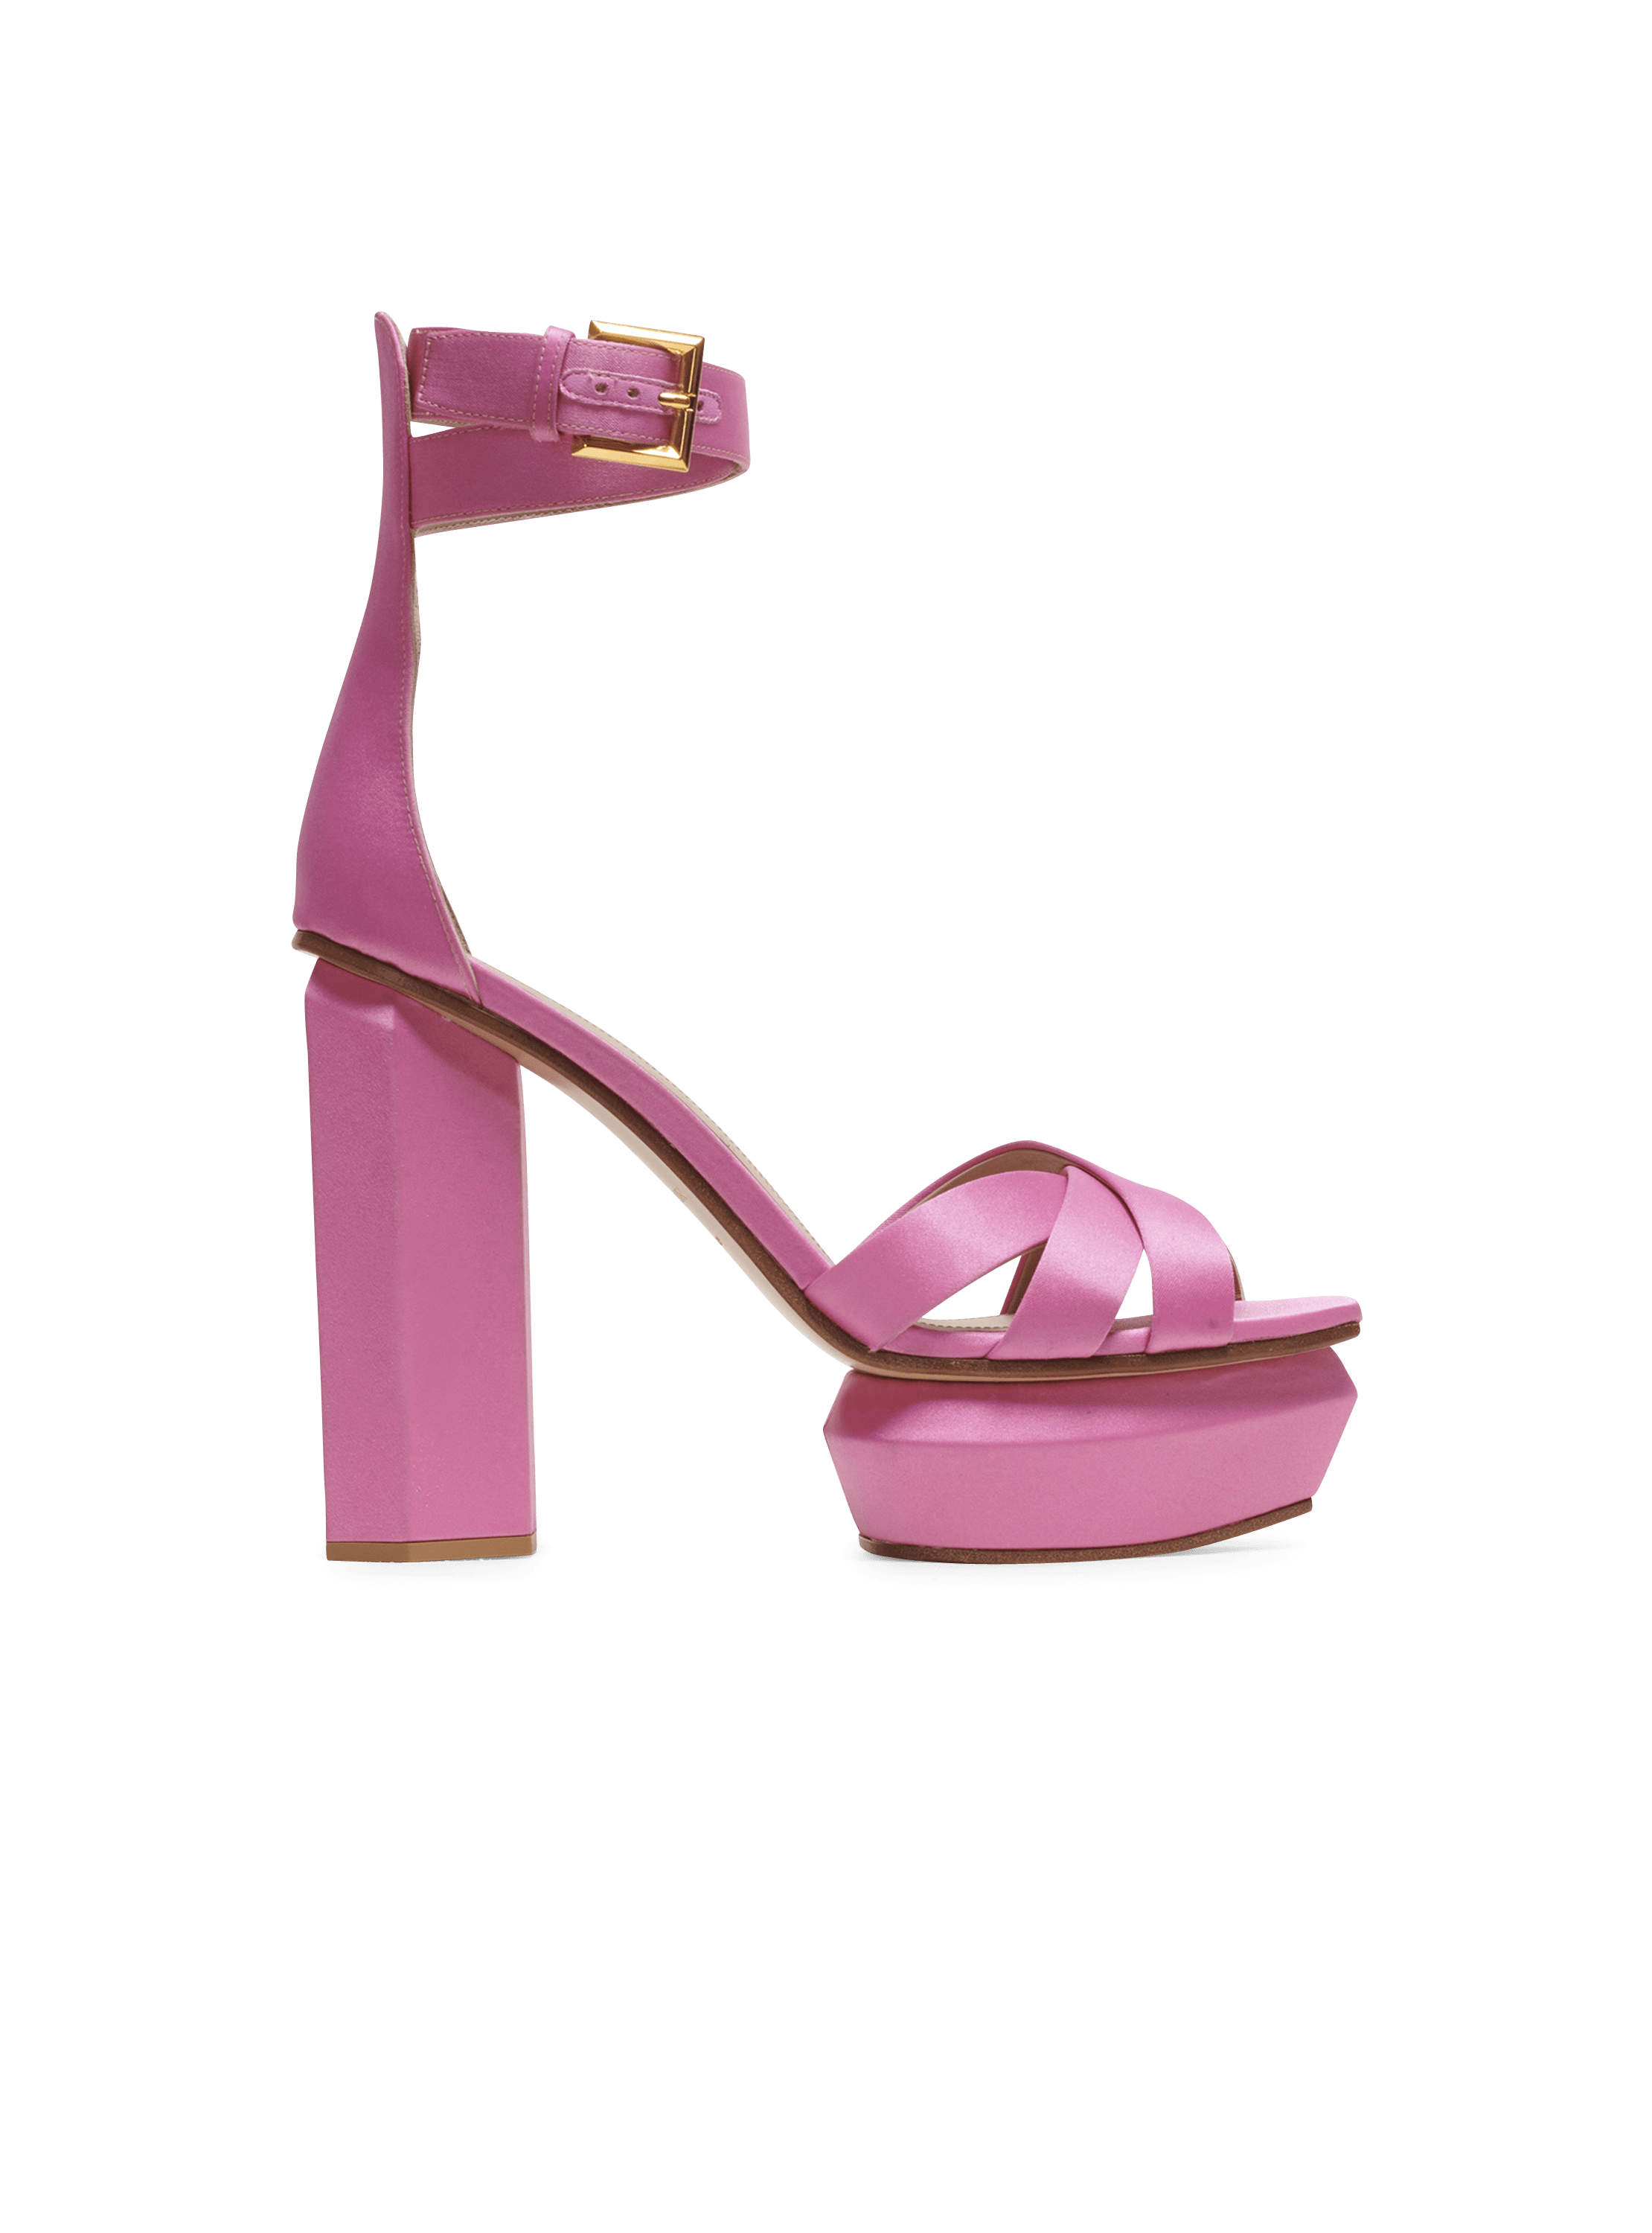 Ava satin platform sandals, pink, hi-res